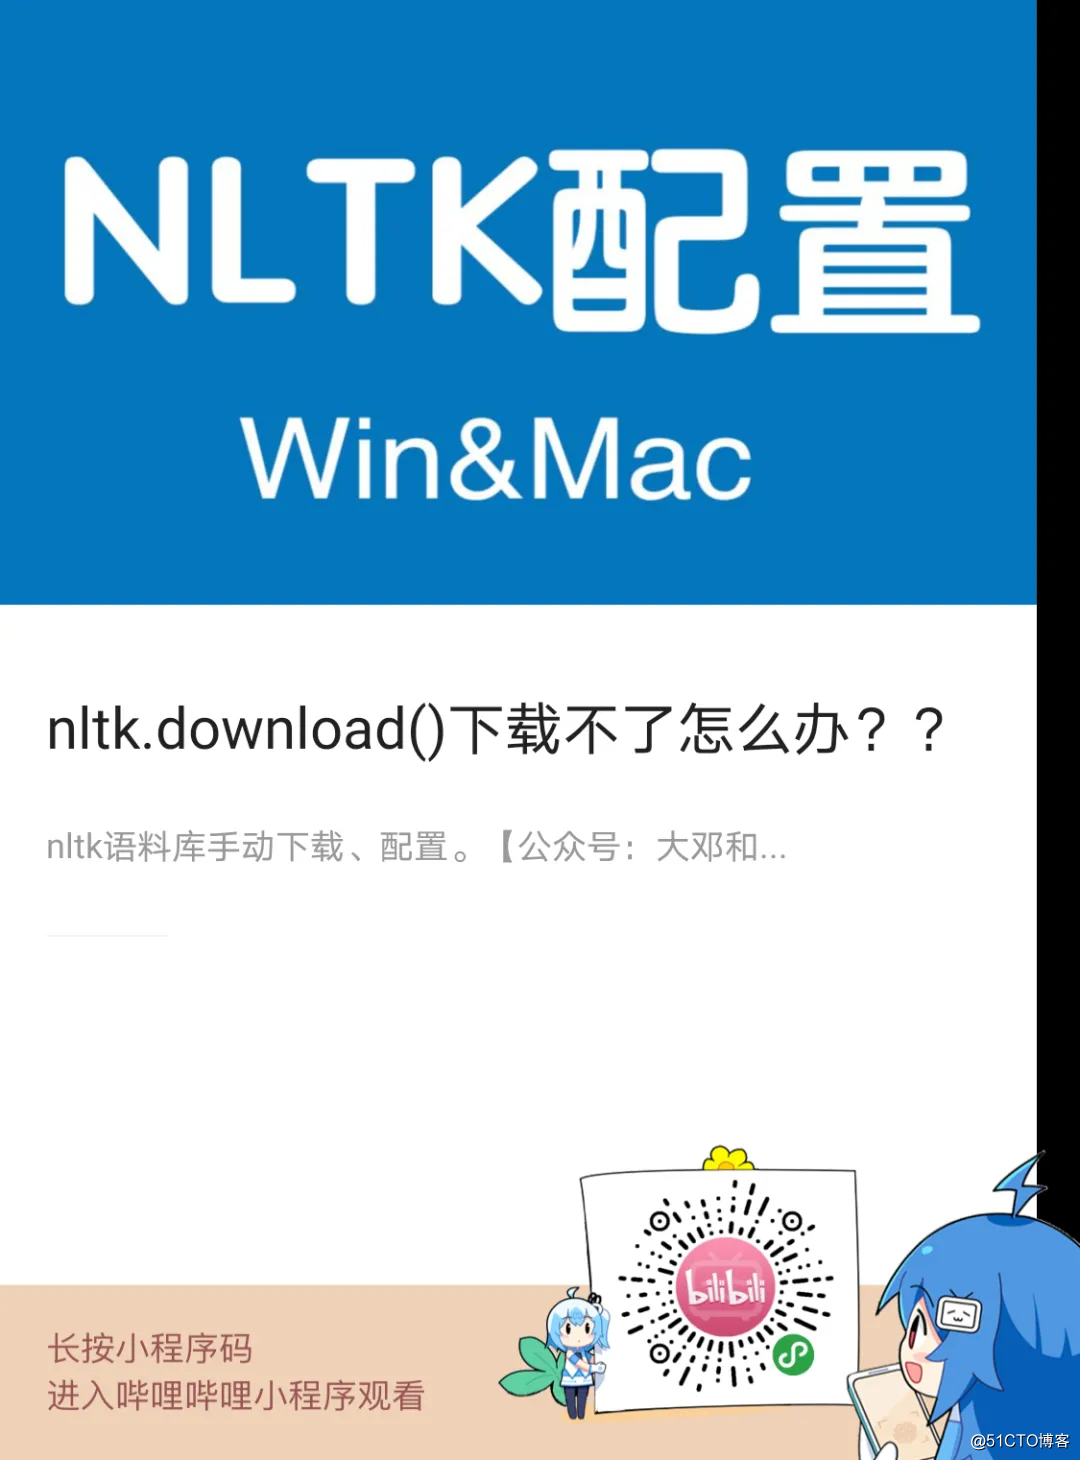 nltk.download（）をダウンロードできない場合はどうすればよいですか？ ？ 